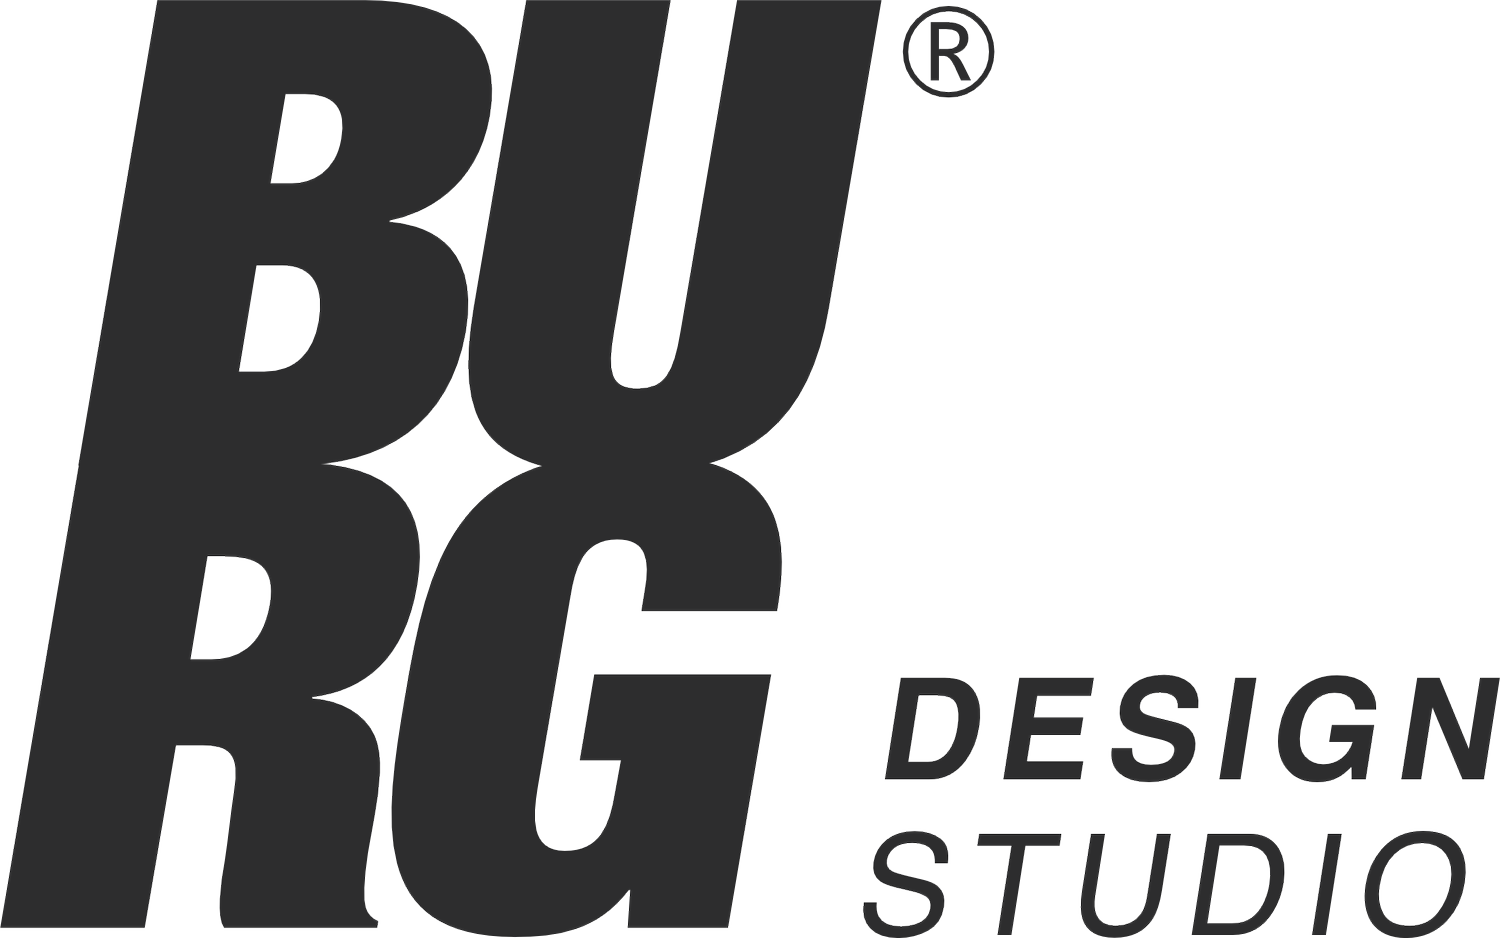 Burg Design Studio